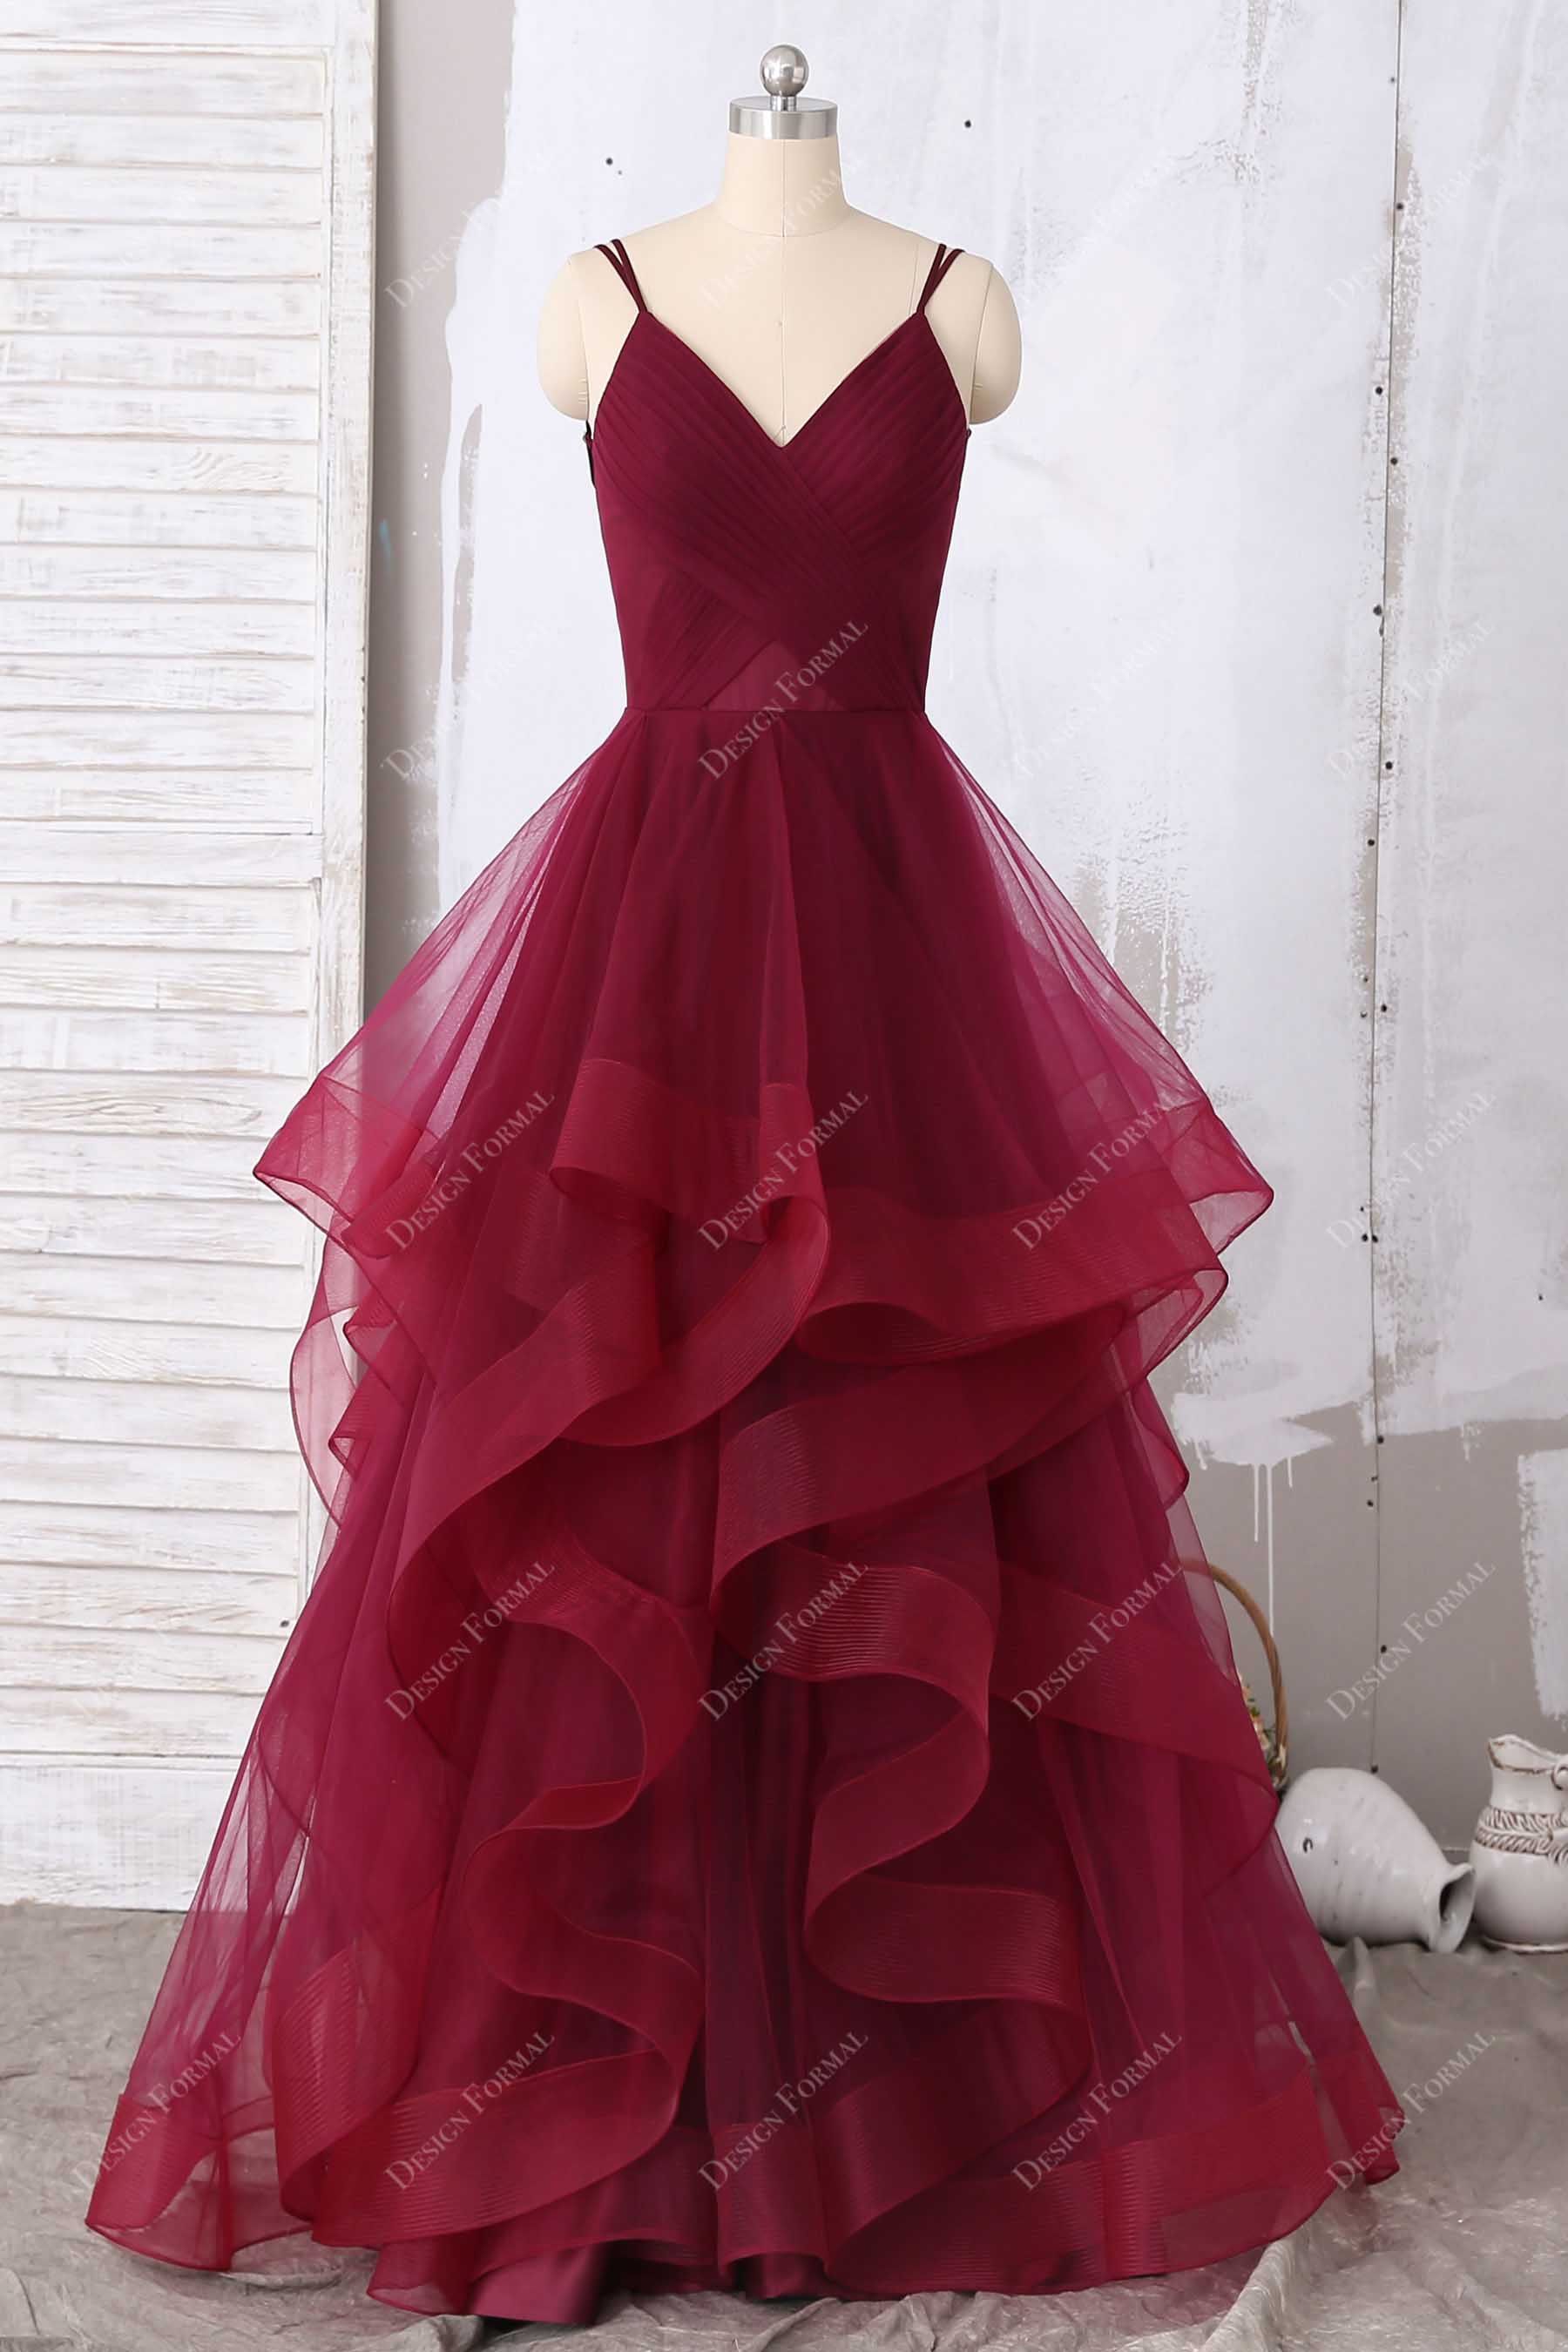 Ruffled Burgundy Tulle Pleated V-neck Designer Prom Gown